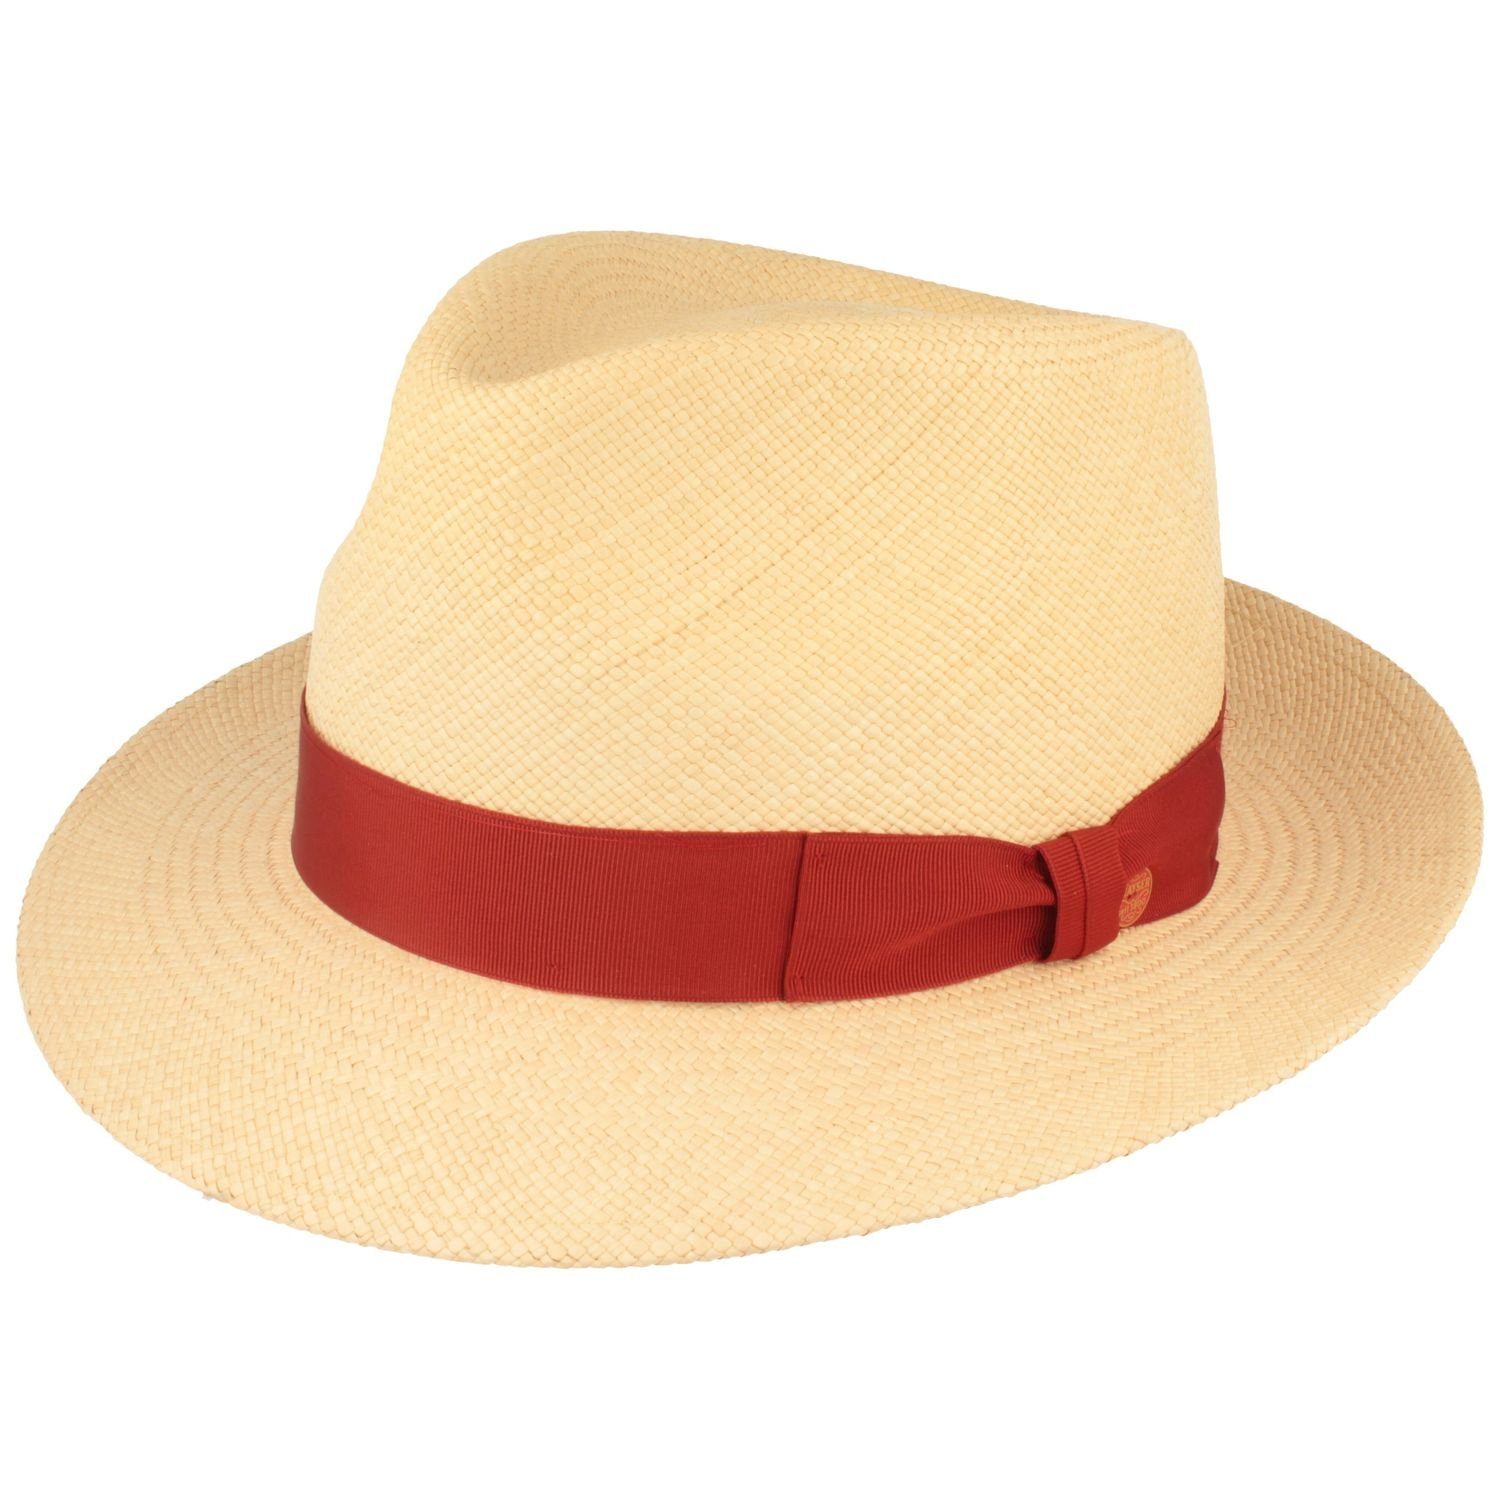 Mayser Strohhut wasserabweisender, hochwerigter Panama Hut Manuel mit UV-Schutz 80 0004 natur/1032 rot